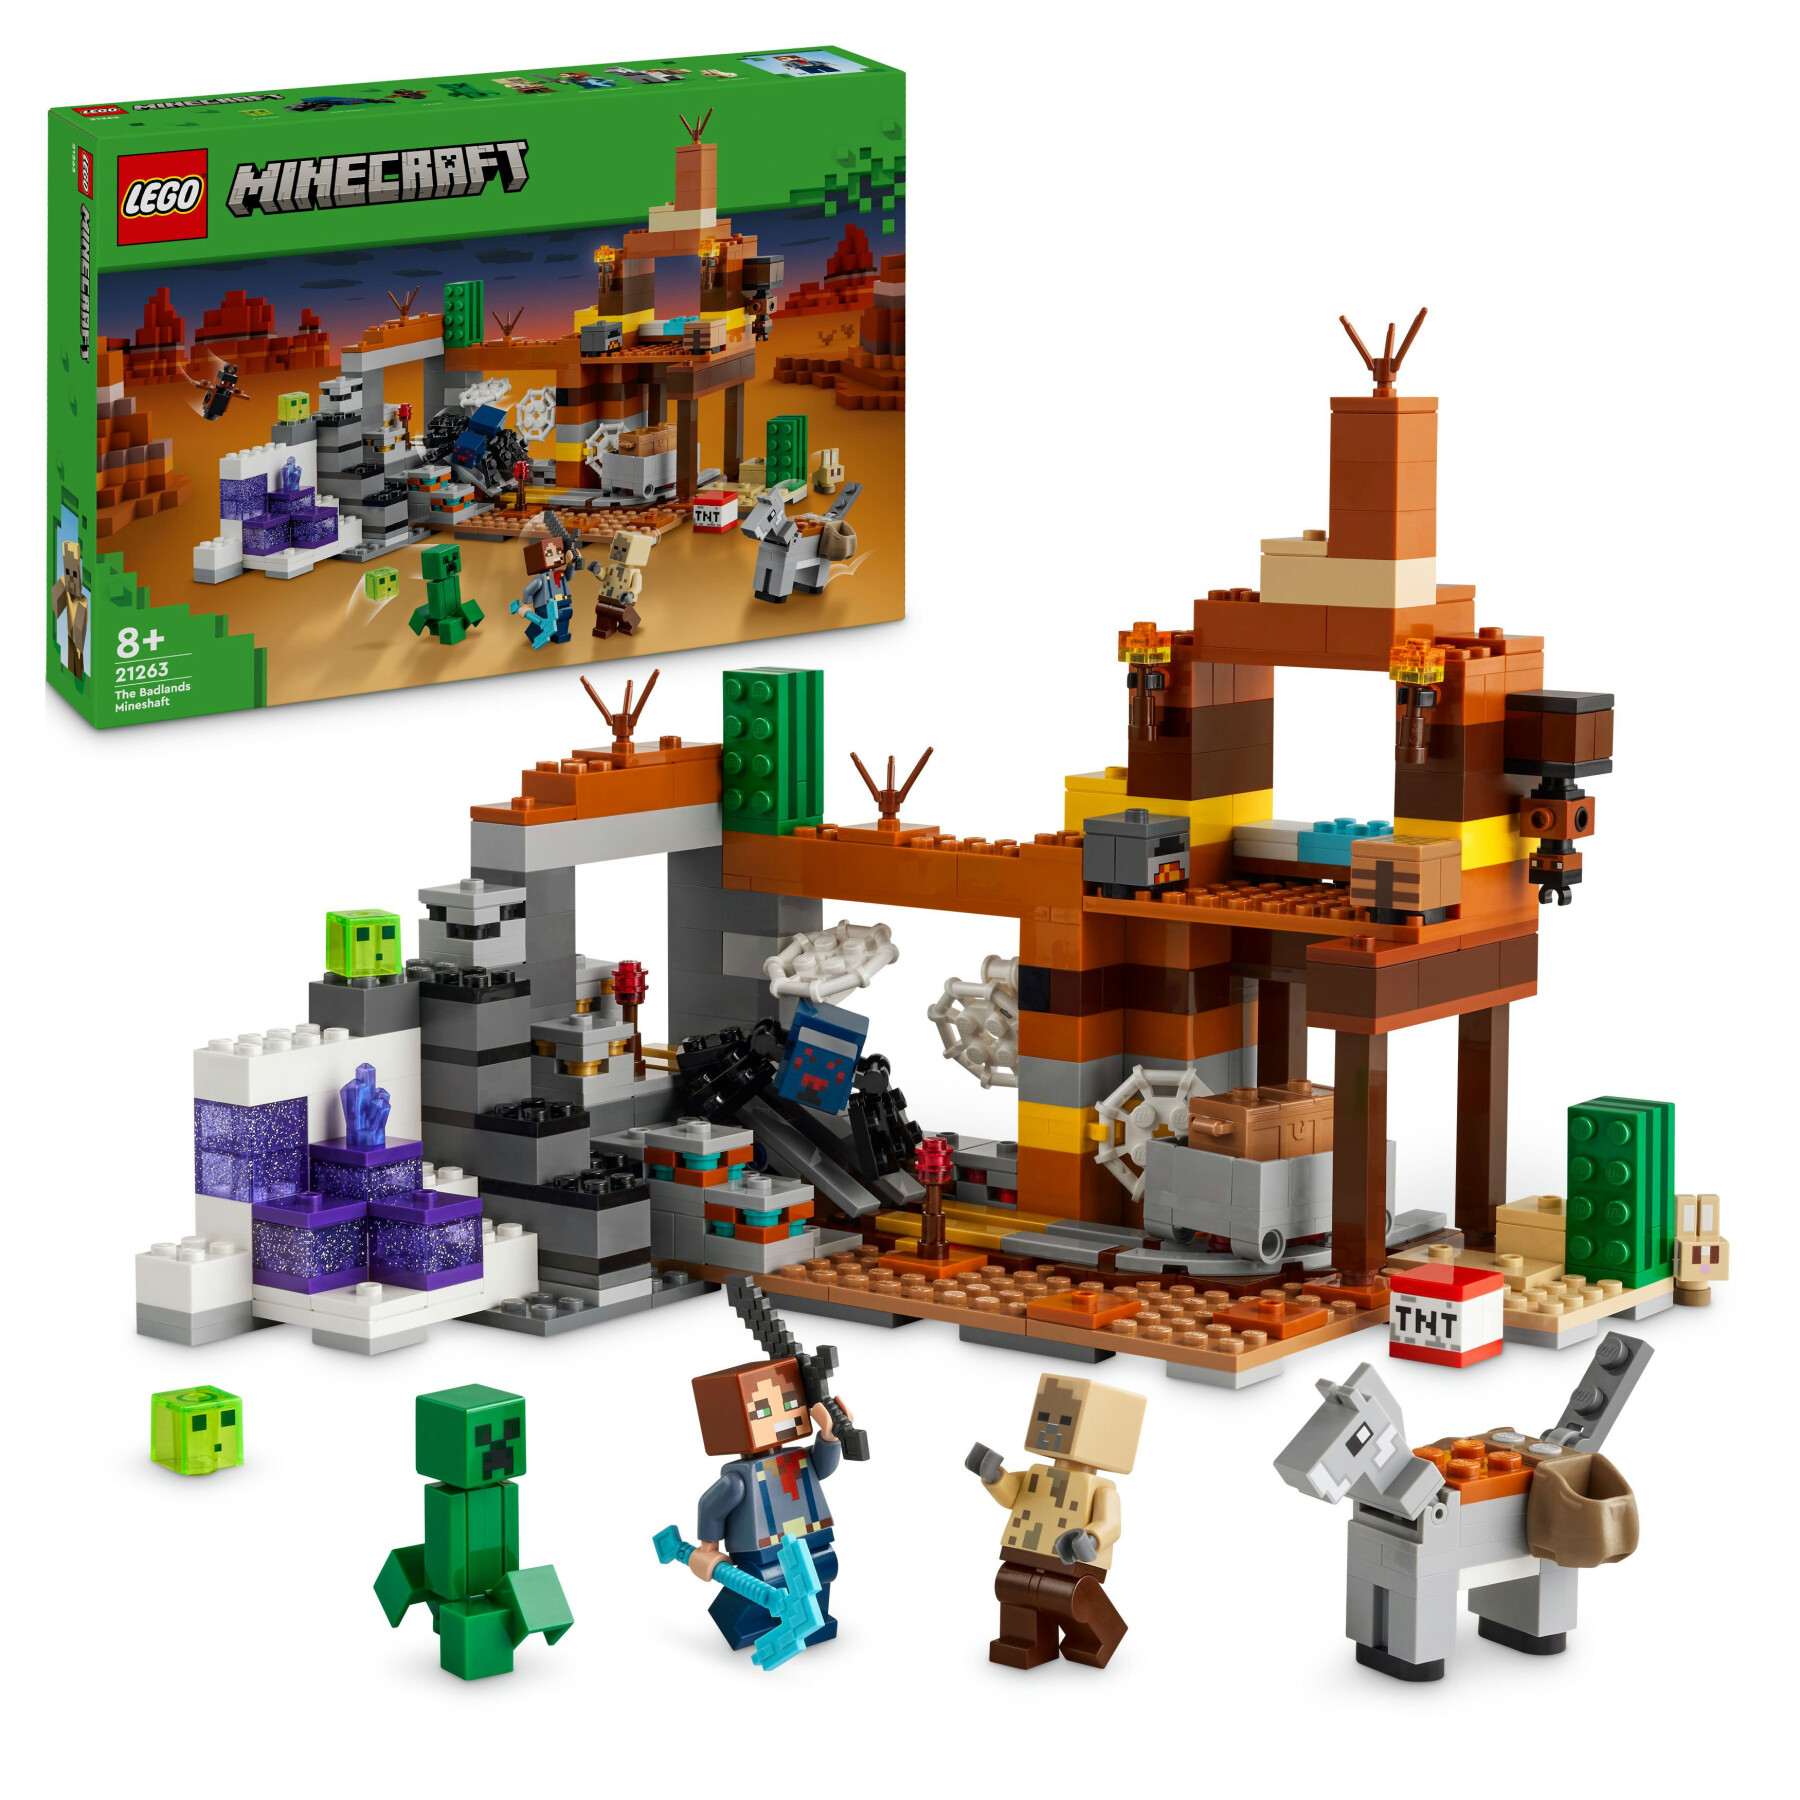 Lego minecraft 21263 la miniera delle badlands, modellino da costruire di bioma con personaggi, giochi creativi per bambini 8+ - MINECRAFT